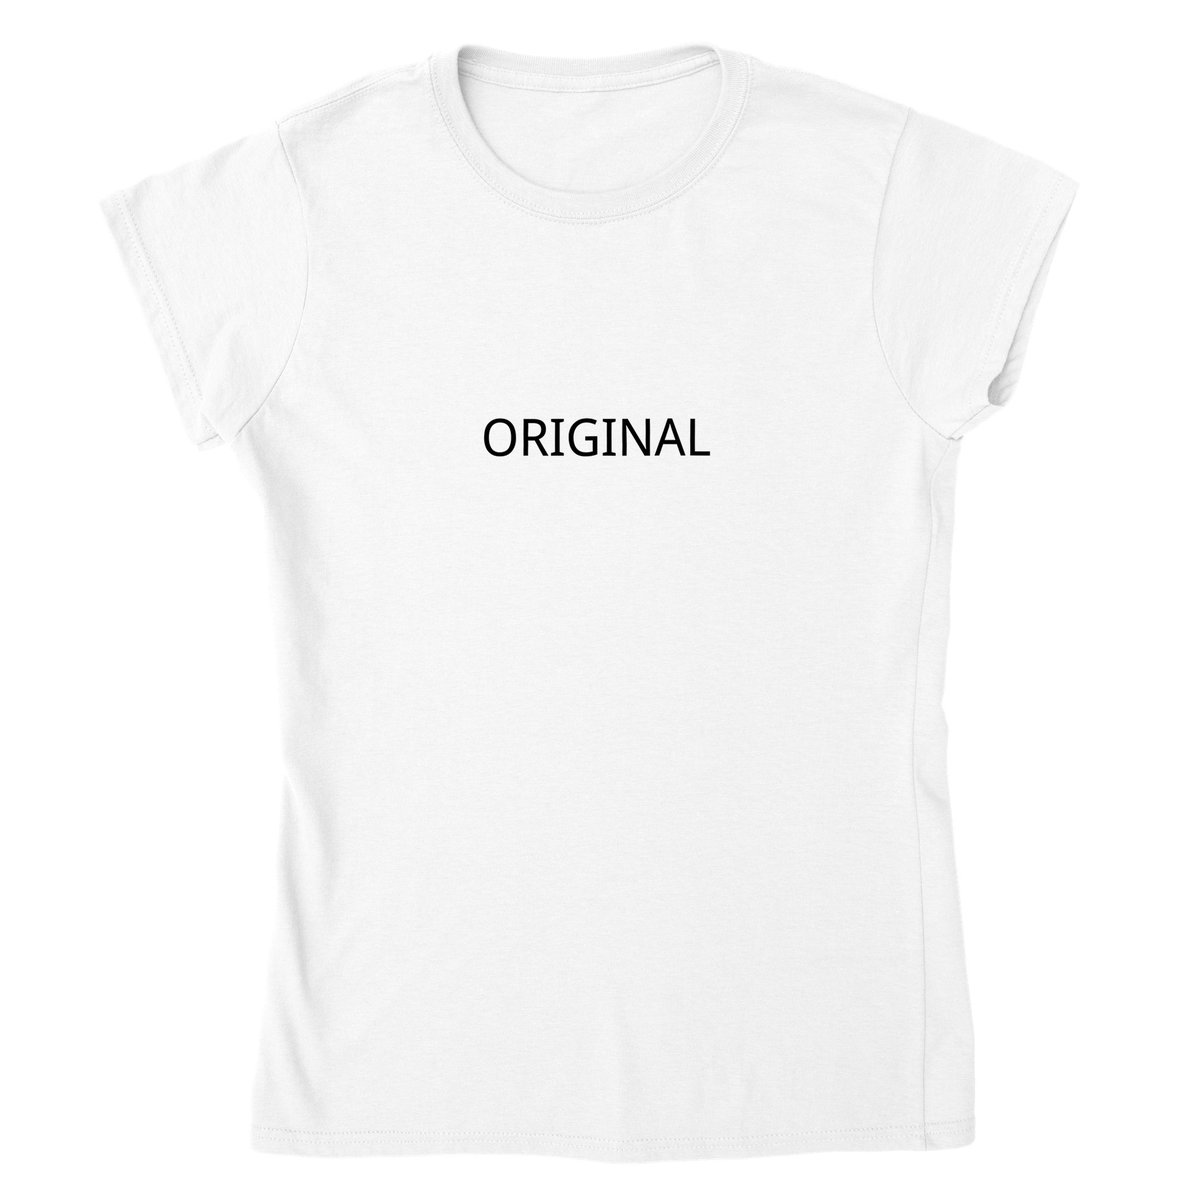 Original Women's T-shirt sassy original shirt womenoriginal slogan tee minimalist saying shirt fashion sassy gift top B0036
baxleyuk.com/products/origi…